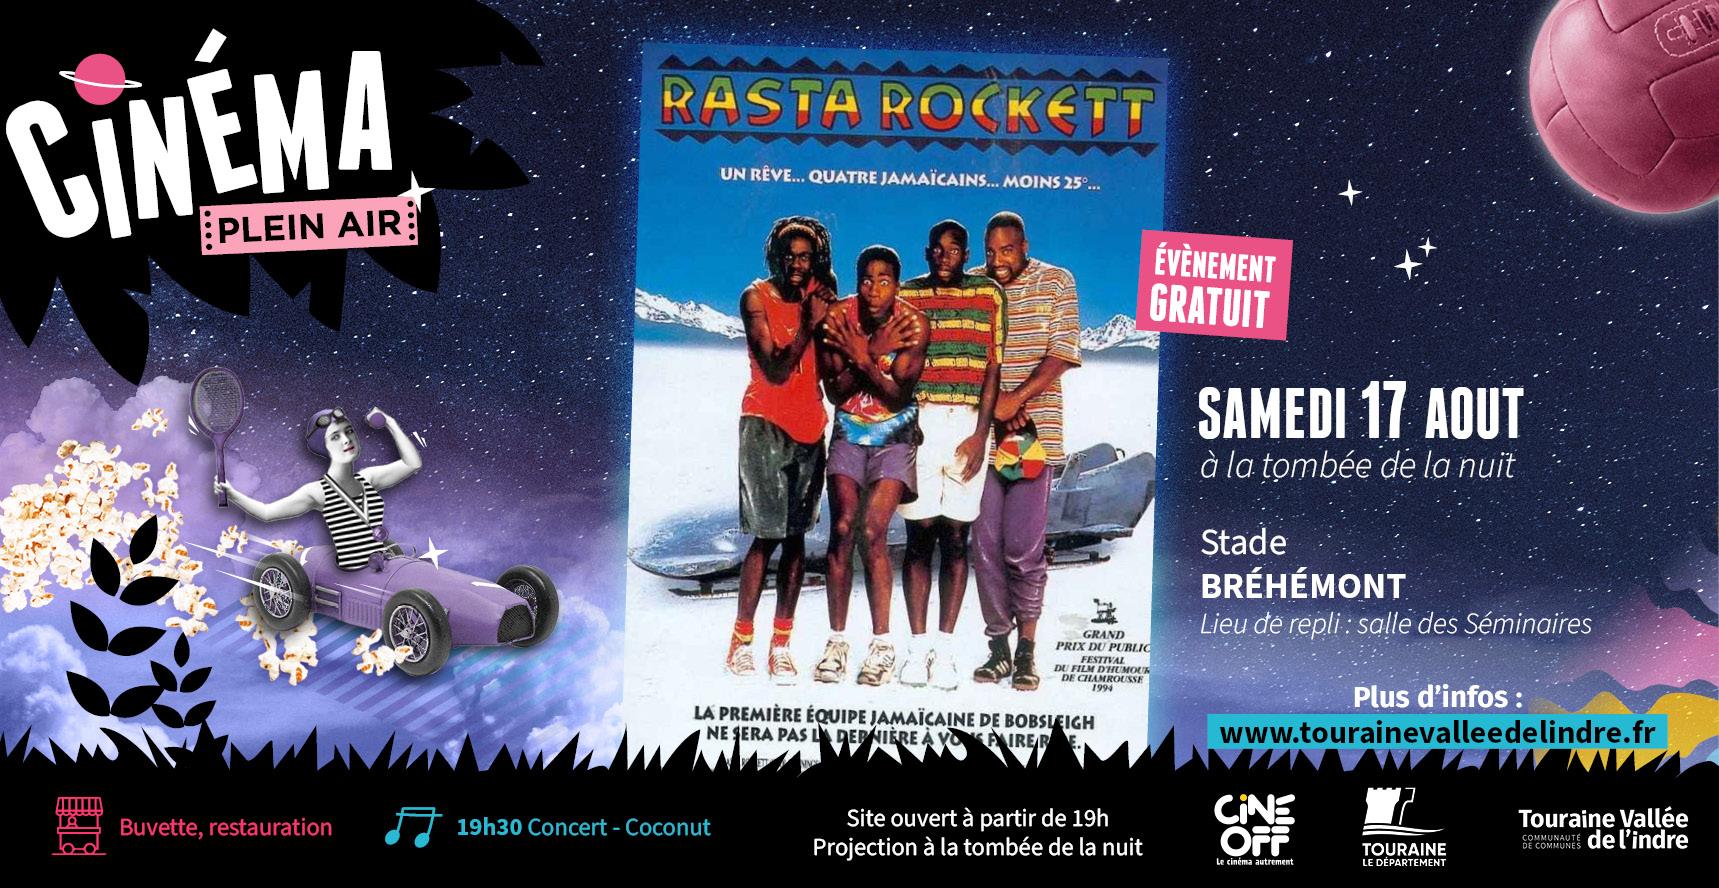 Ciné plein air "Rasta Rockett", en famille, en Touraine Vallée de l'Indre